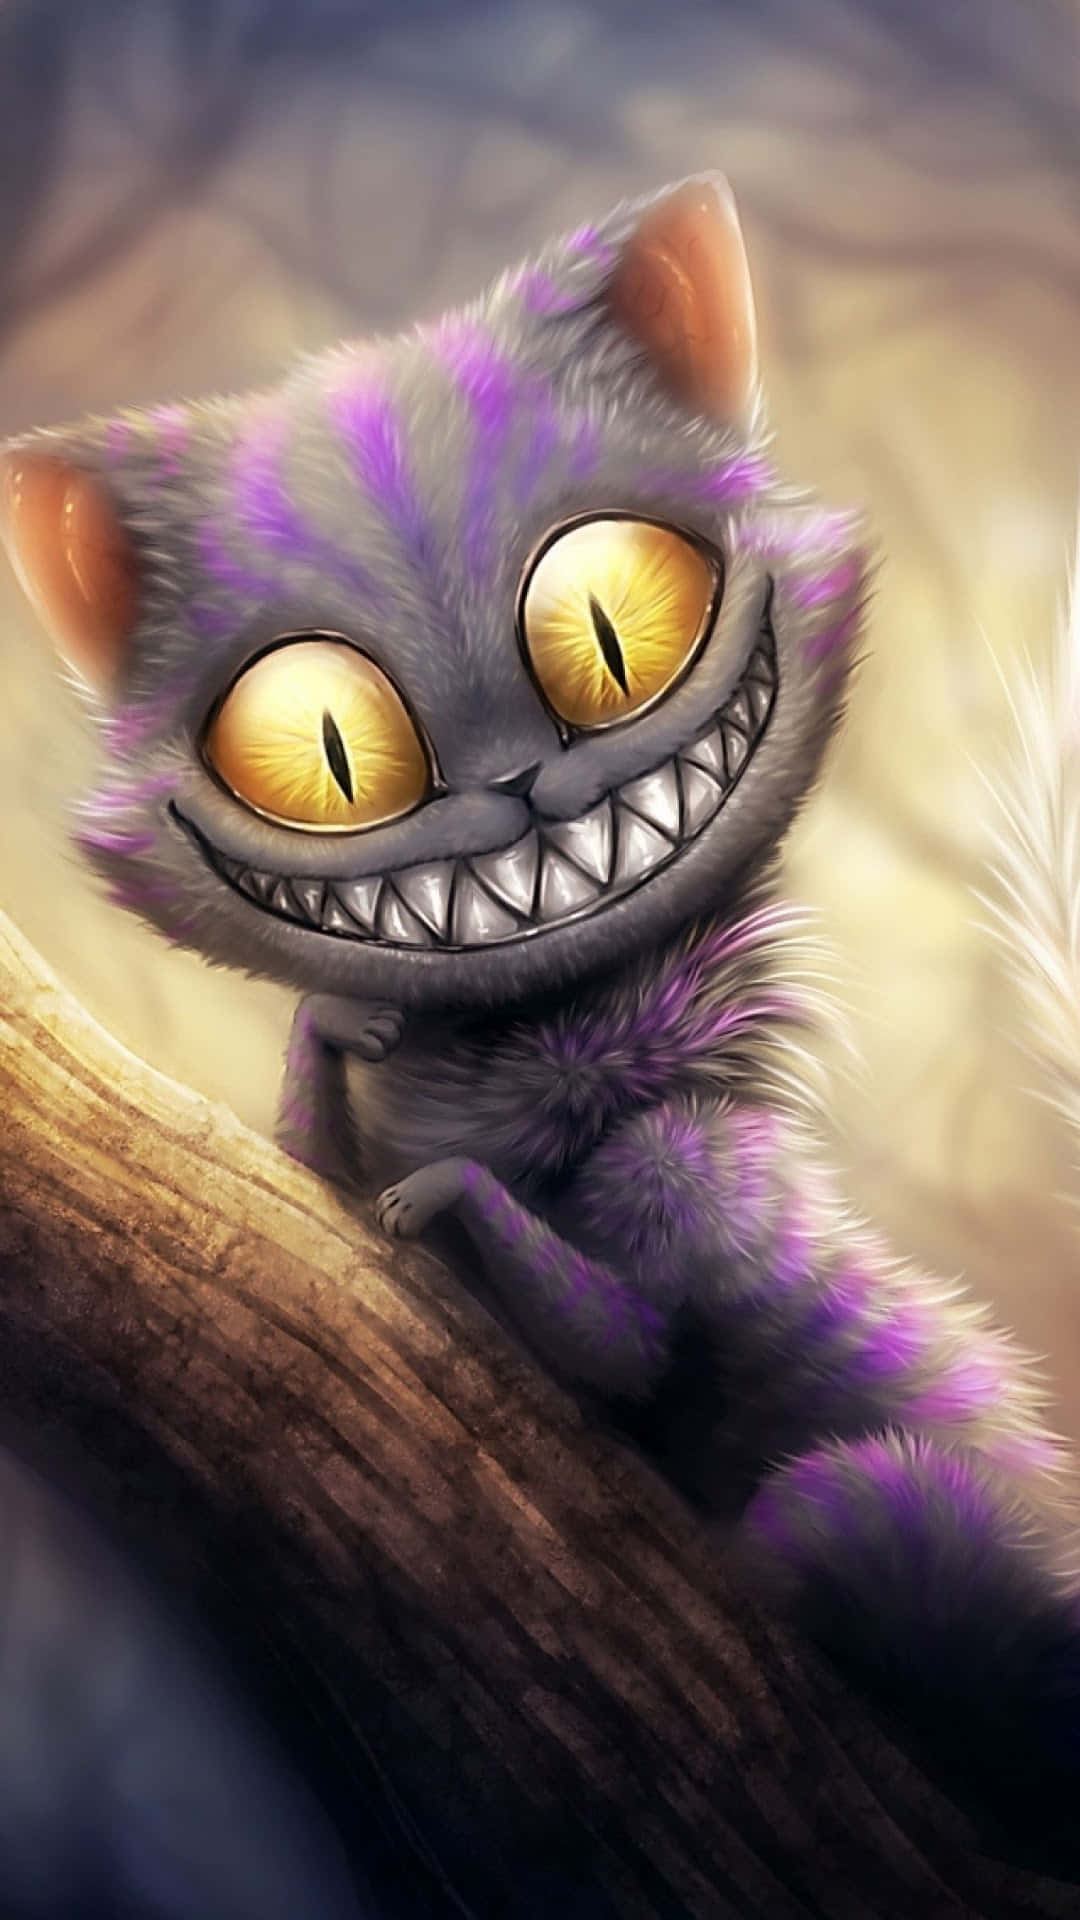 Cheshire Cat Grinning in Wonderland